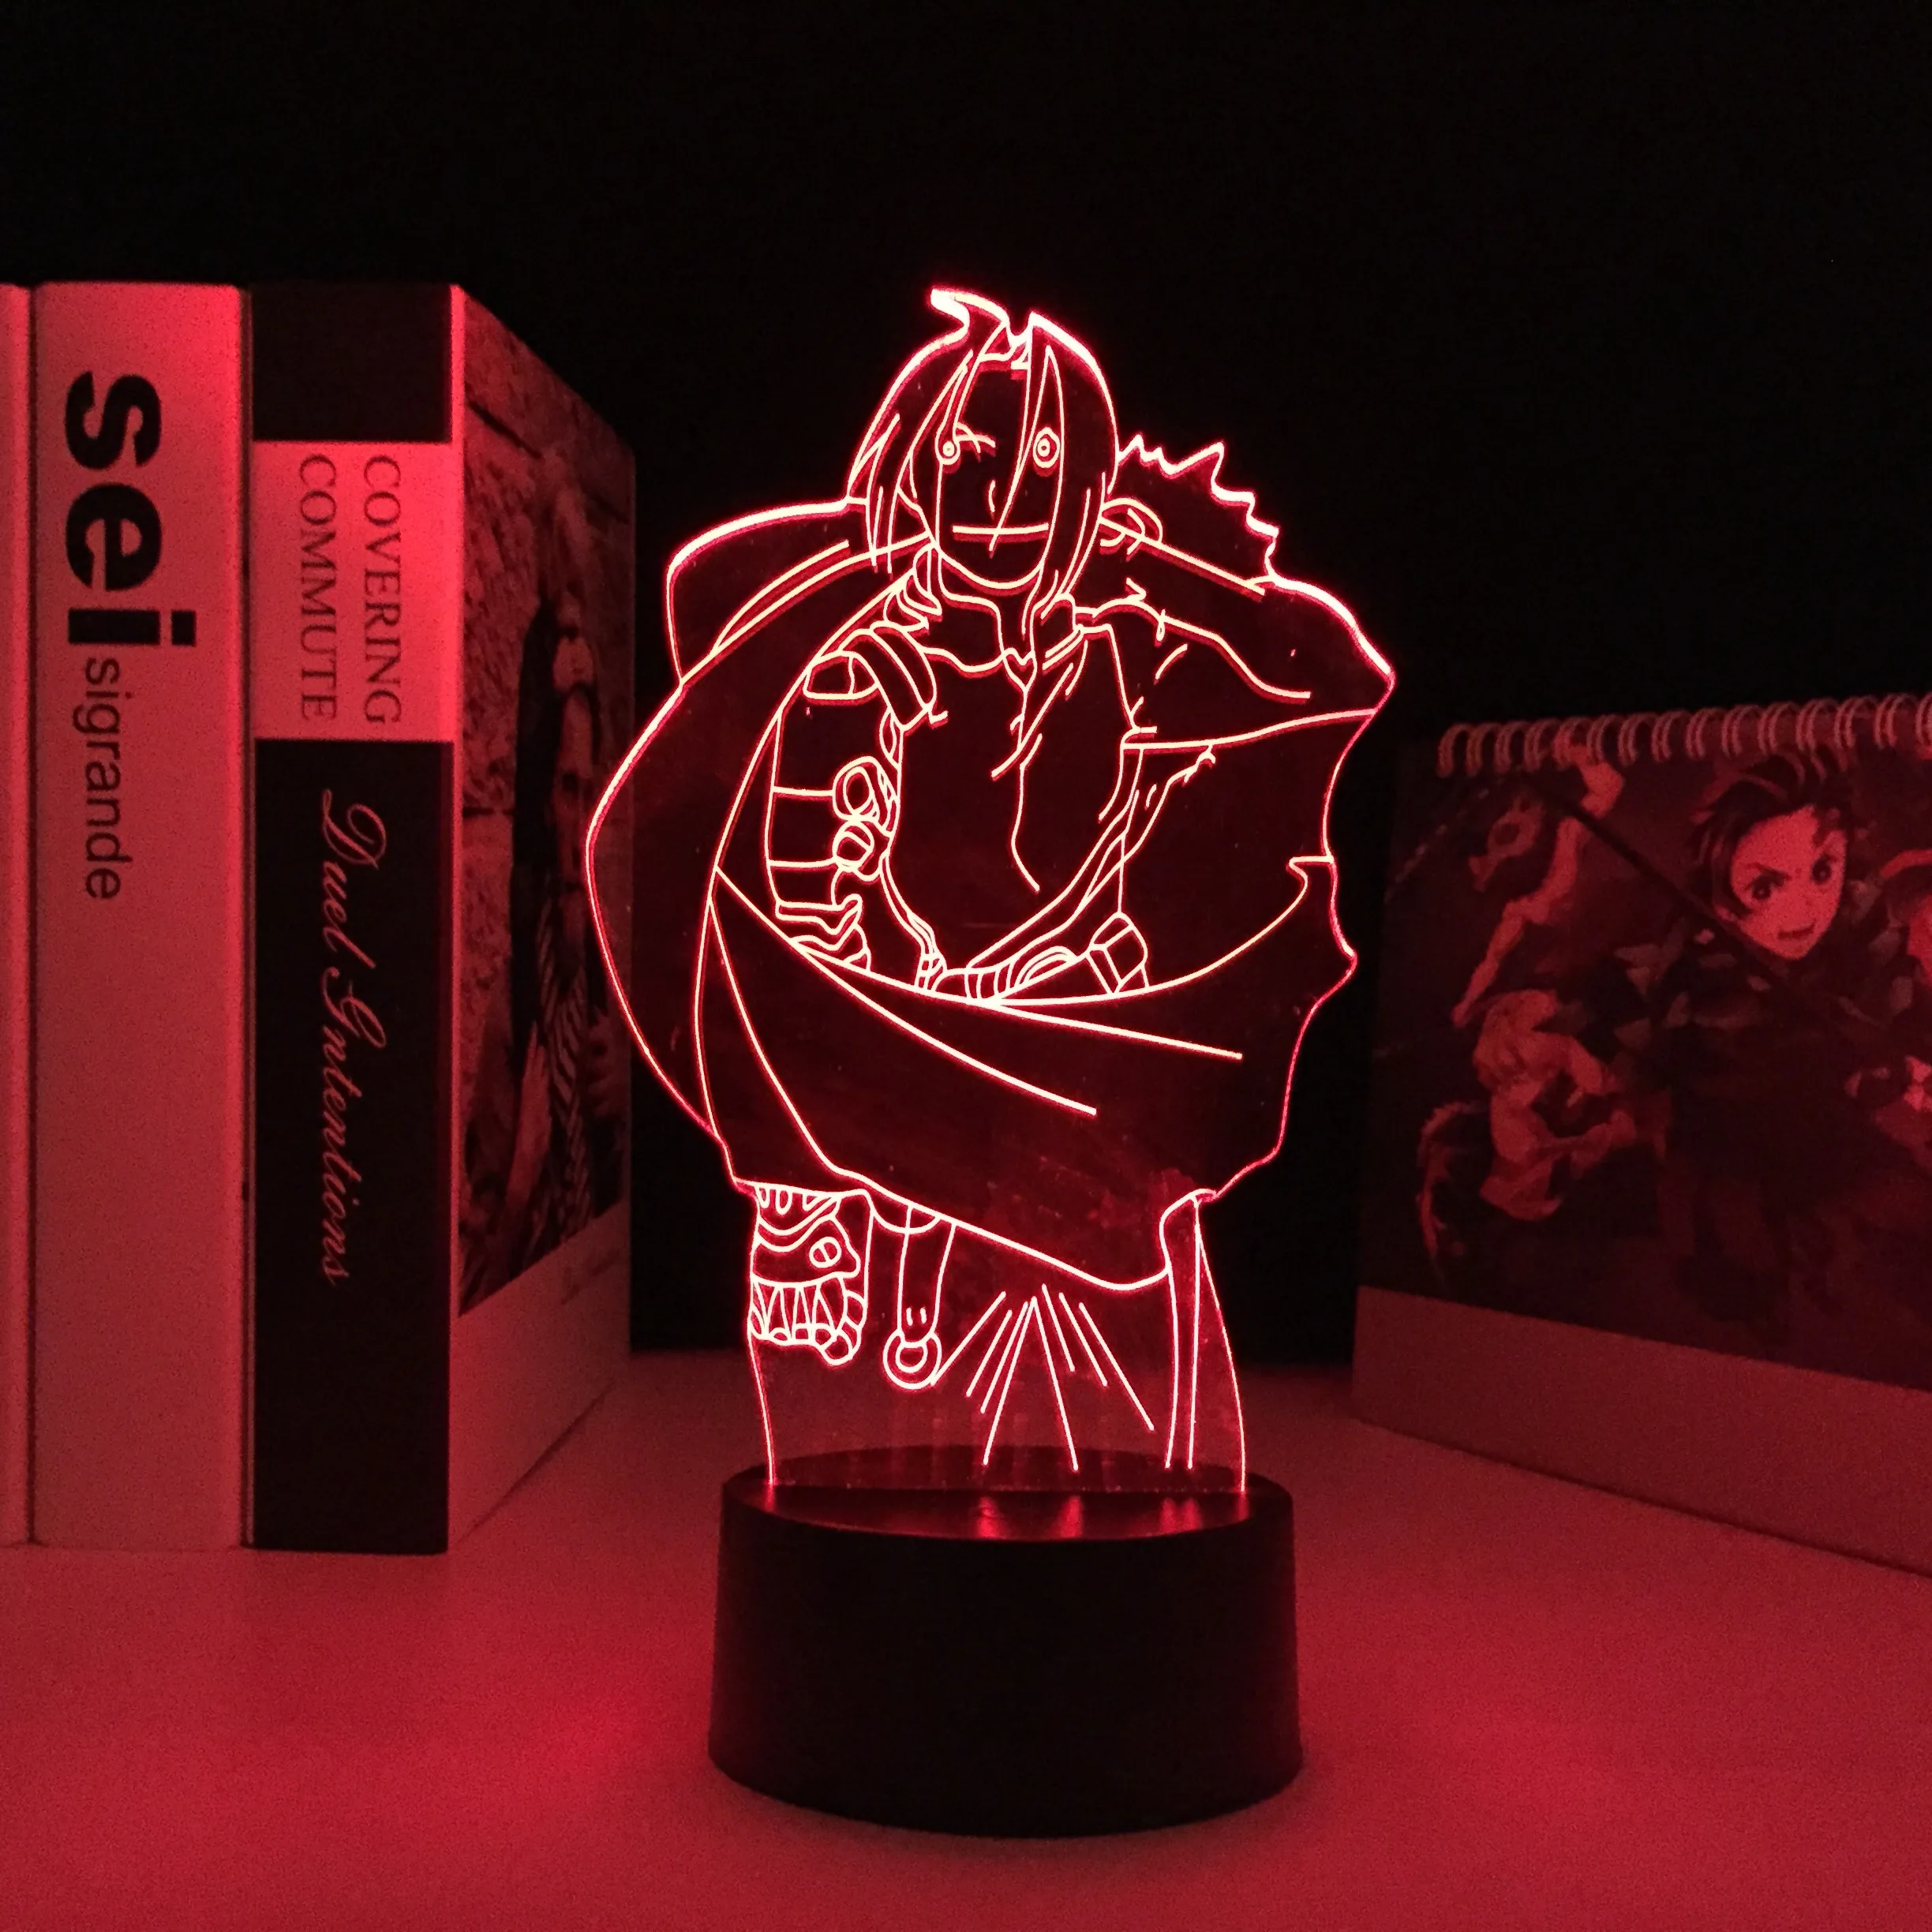 

Anime Figure Fullmetal Alchemist Edward Elric Night Light 3D LED Color Changing Kids Bedroom Decorative USB Desk Lamp